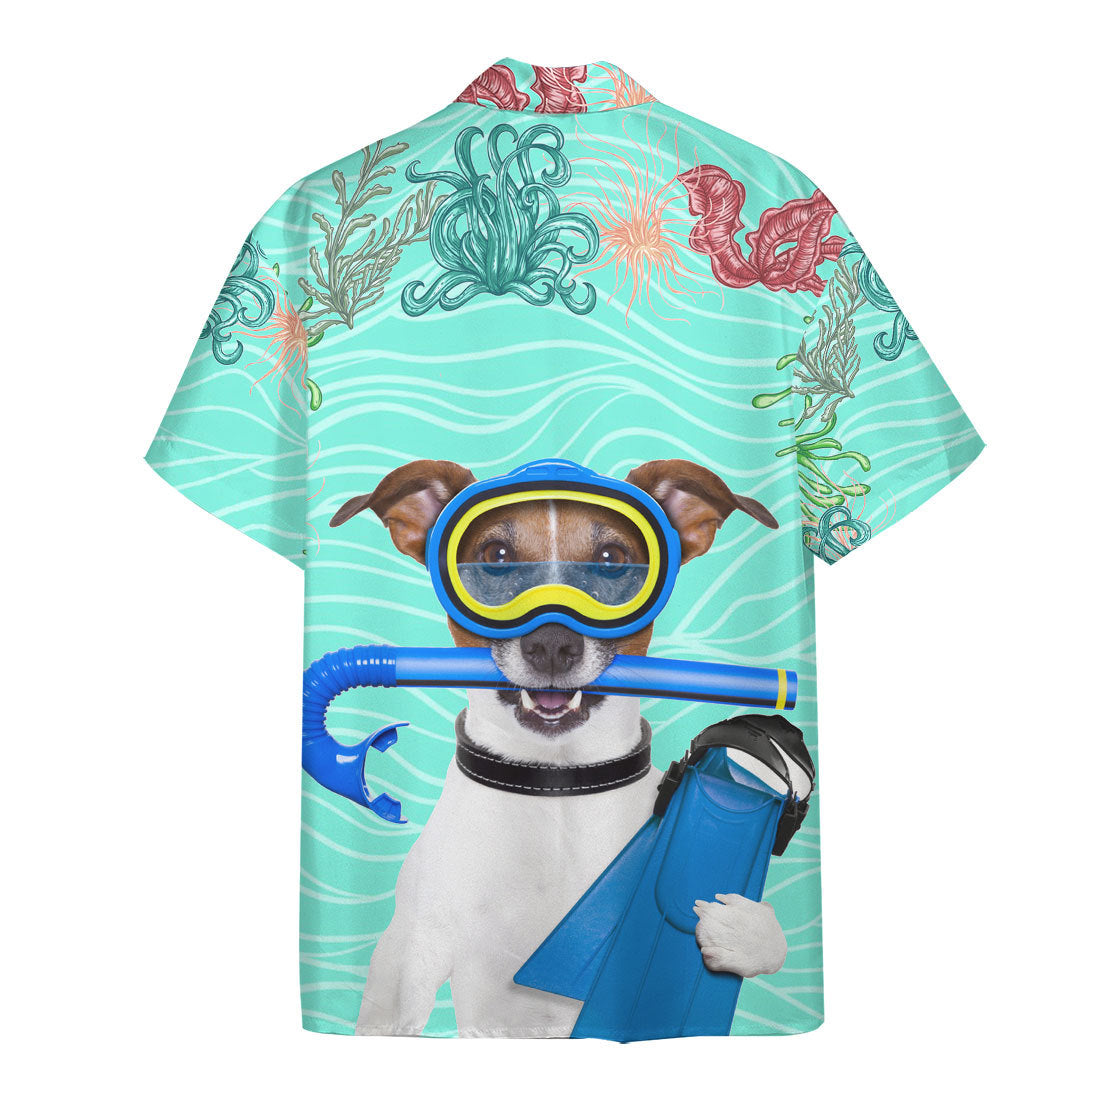 Scuba Diving Jack Russell Terrier Dog Hawaii Shirt 1